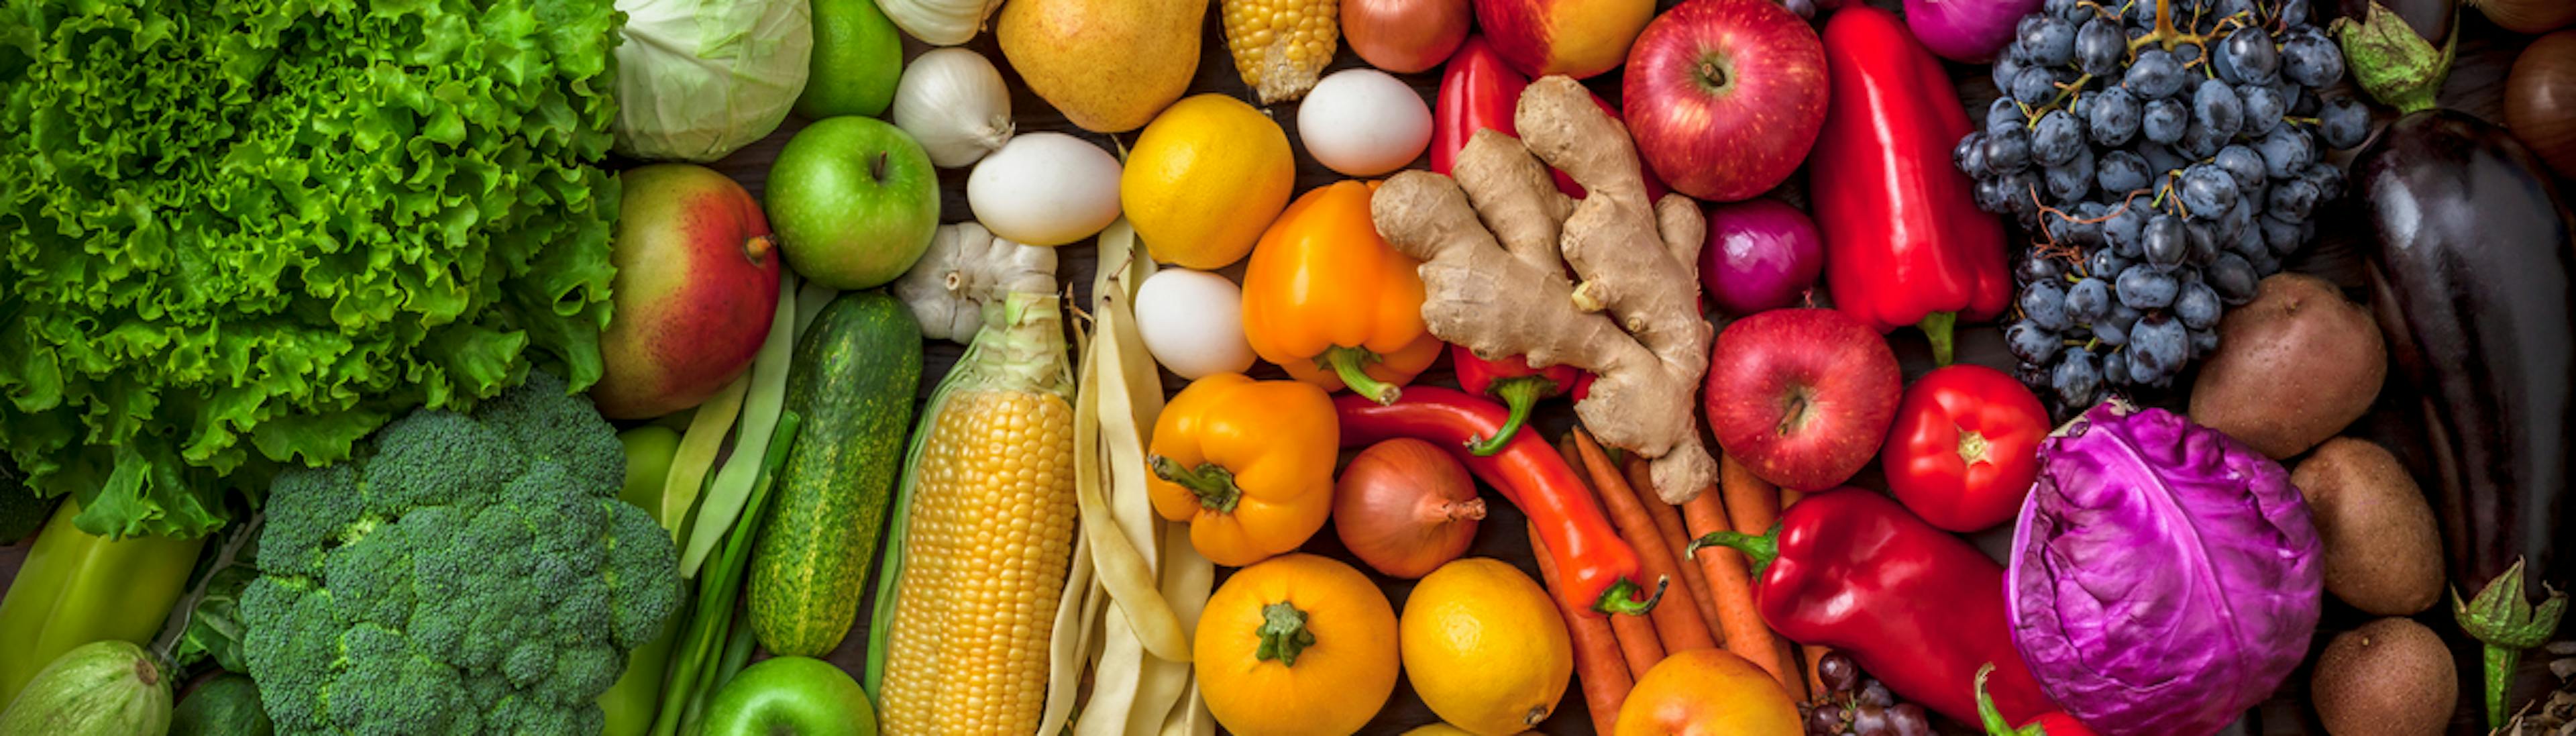 Frutta e verdura che possono aiutare il nostro sistema immunitario